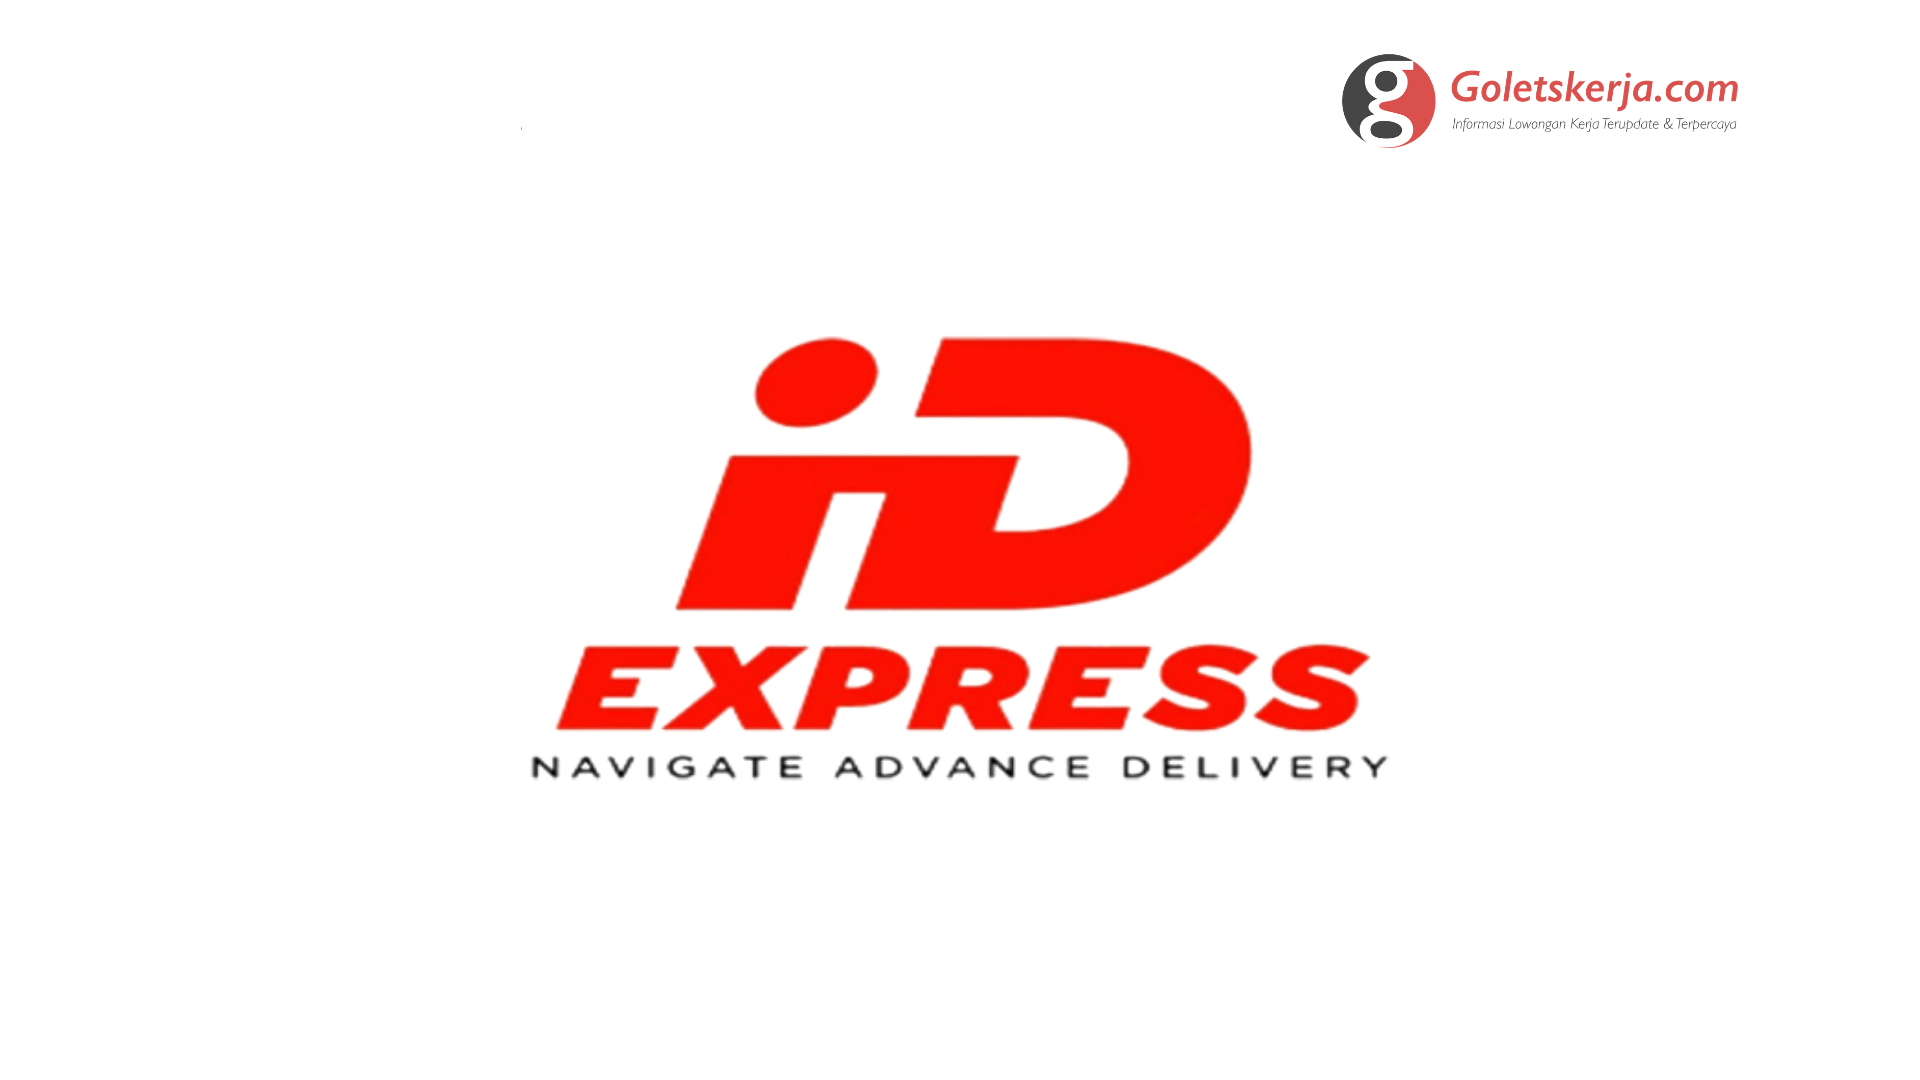 Lowongan Kerja PT Global Timur Ekspress (ID Express)